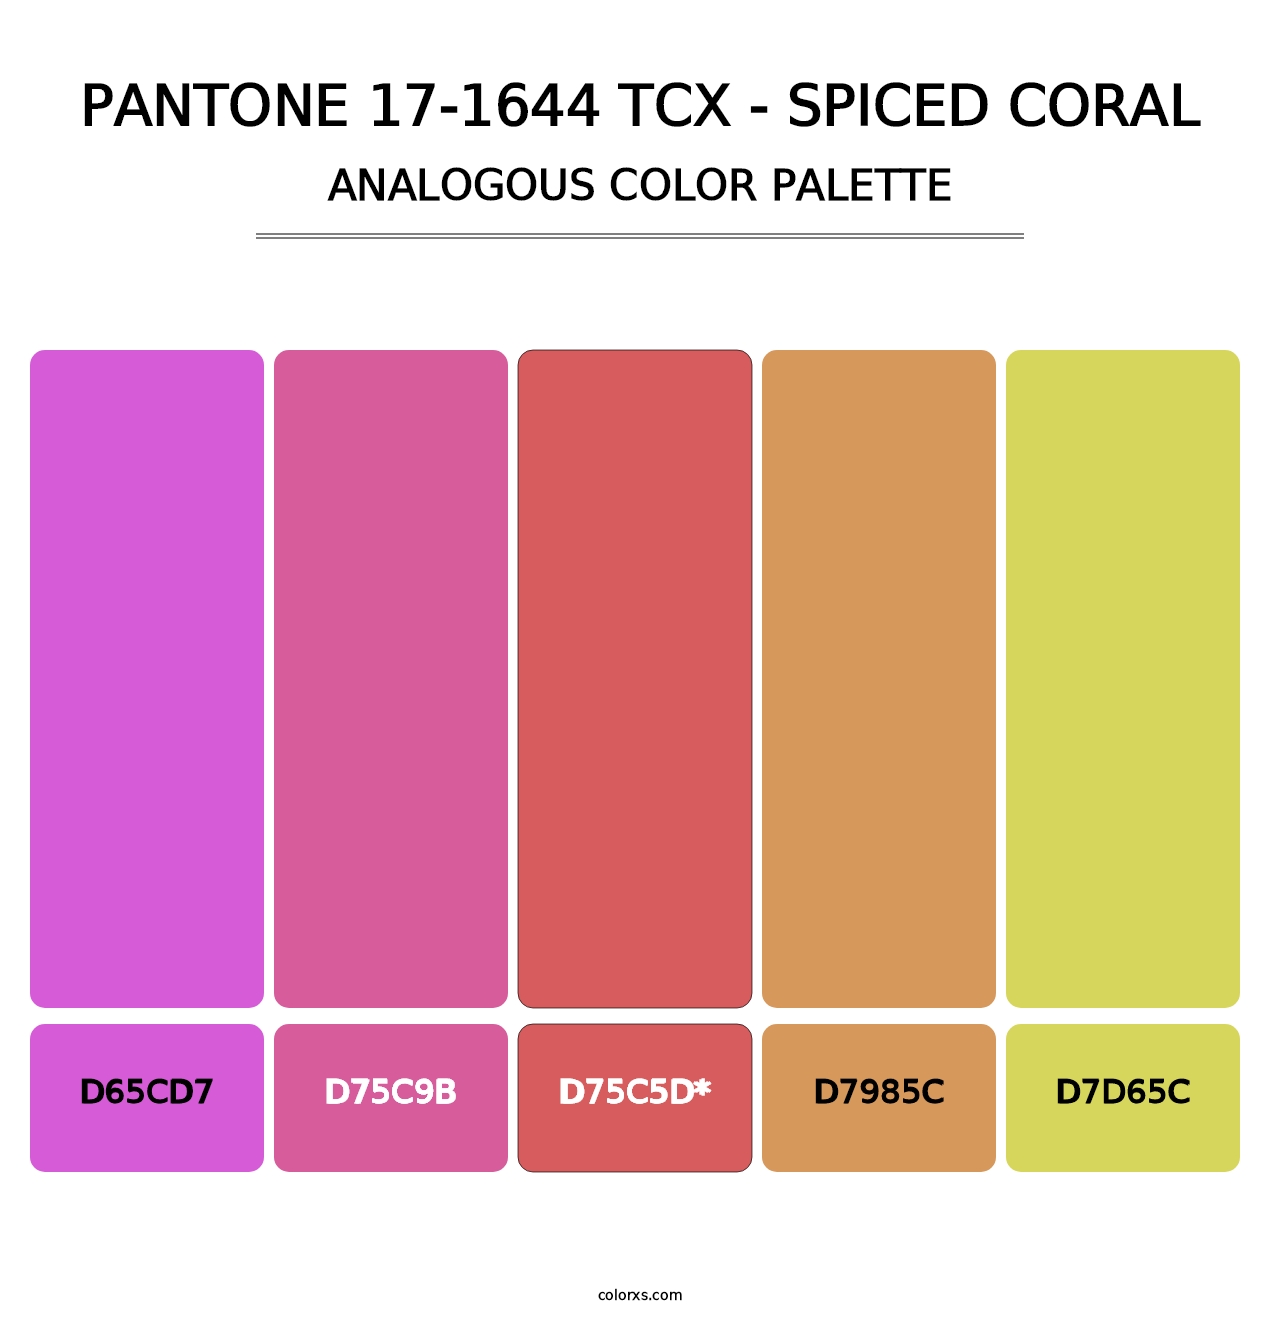 PANTONE 17-1644 TCX - Spiced Coral - Analogous Color Palette